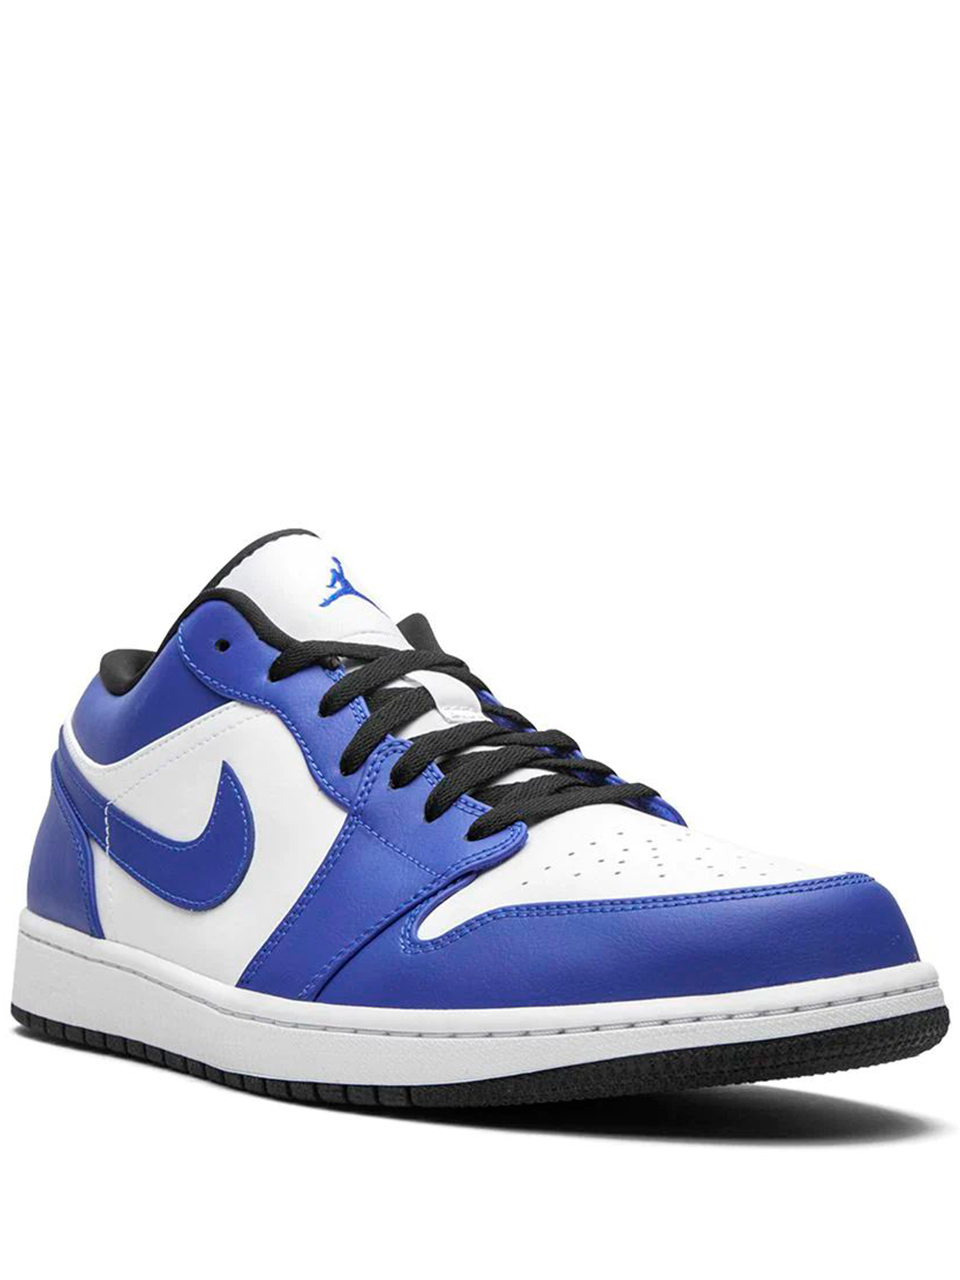 Imagem de: Tênis Nike Air Jordan 1 Low Game Royal Azul